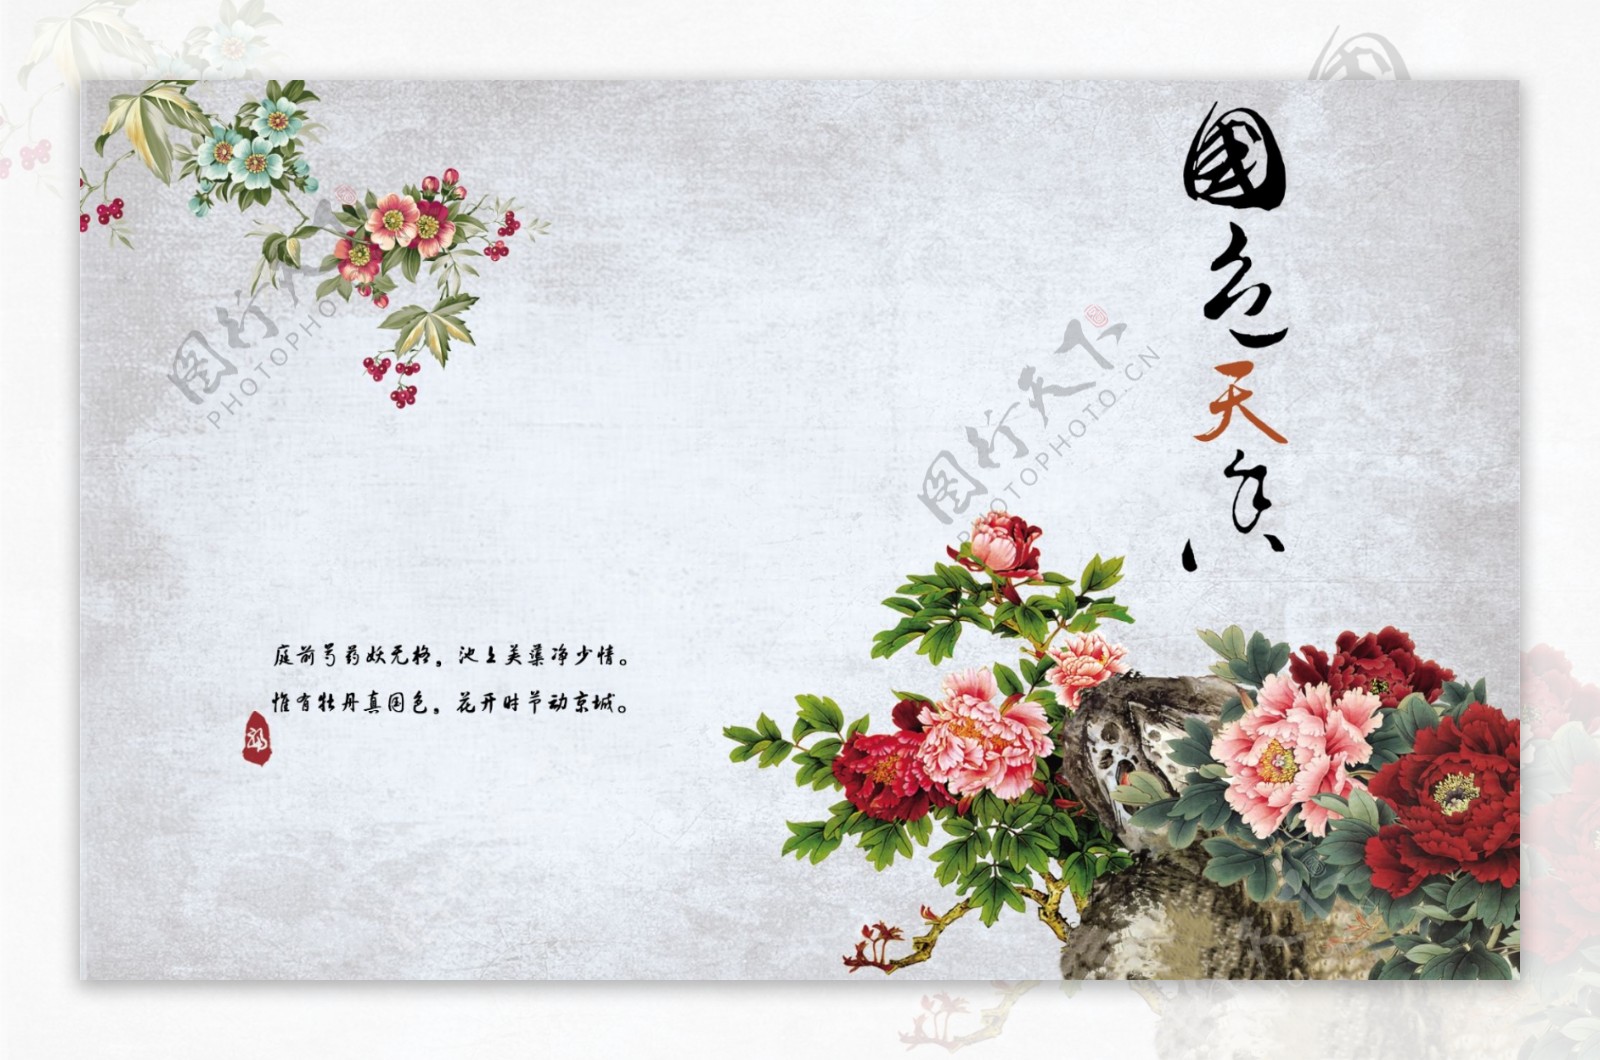 中国风牡丹画写意风景背景墙